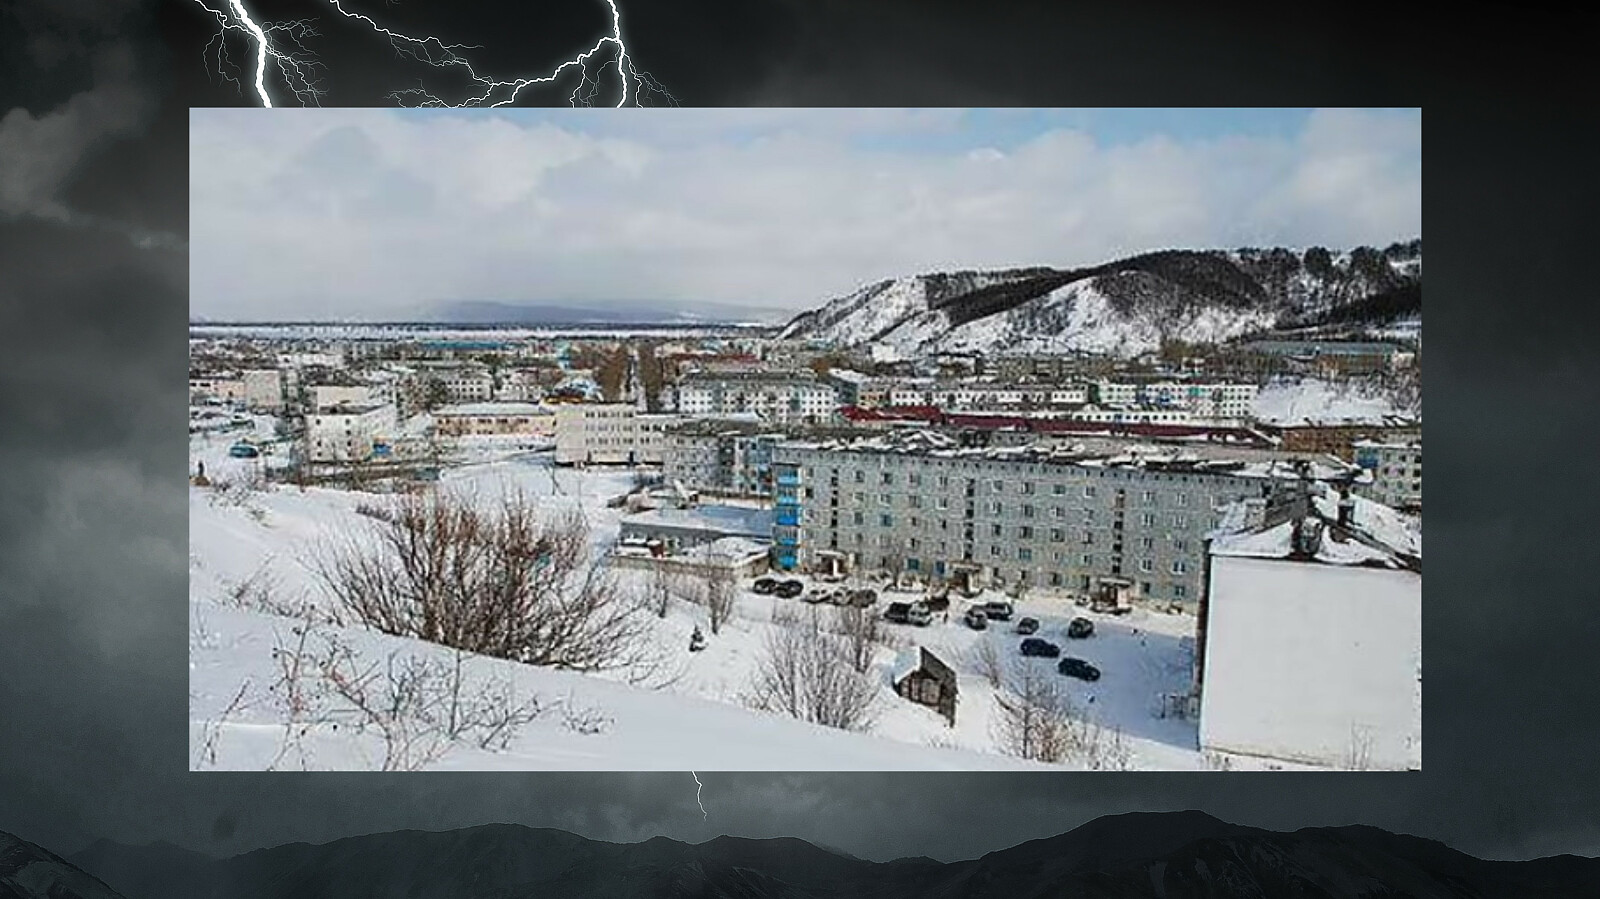 Podczas zamieci spadły 2 stopy śniegu, czyli około 70 cm, a w niektórych miejscach zaspy piętrzyły się na wysokości pierwszego piętra (Fot. Social media/The Siberian Times/dailymail.co.uk/pl.depositphotos.com)